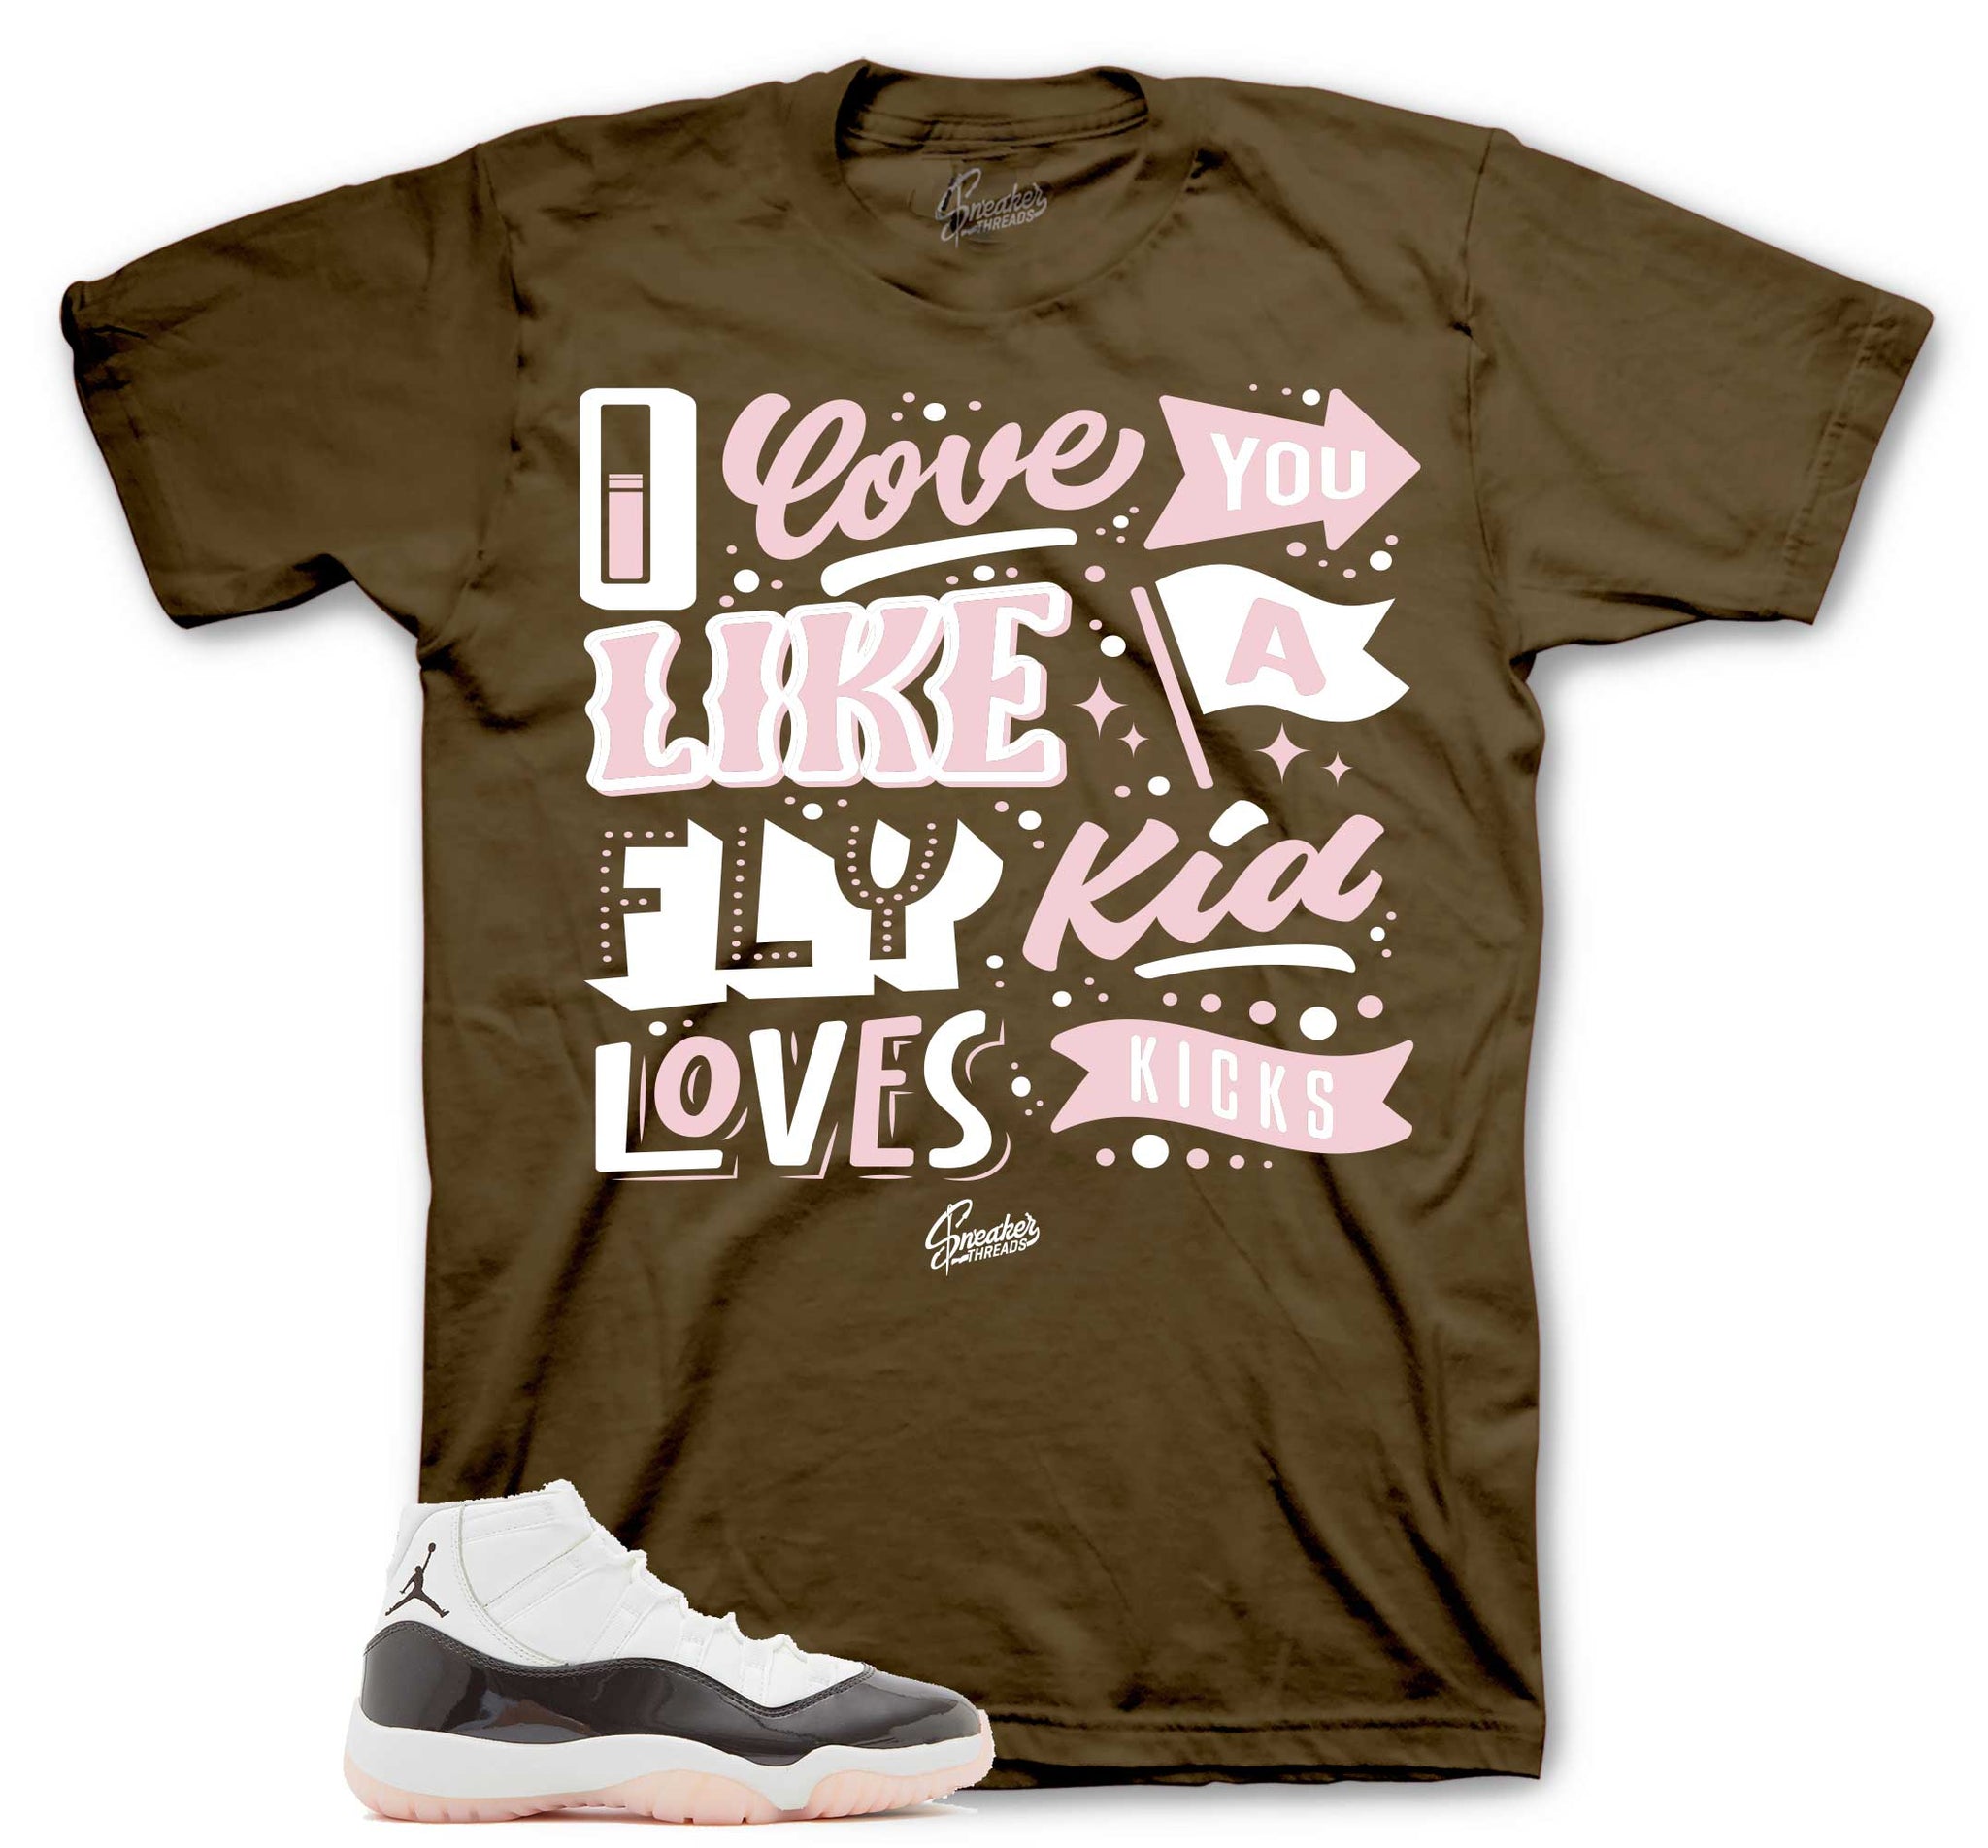 Love Kicks T-Shirt - Retro 11 Neapolitan Shirt